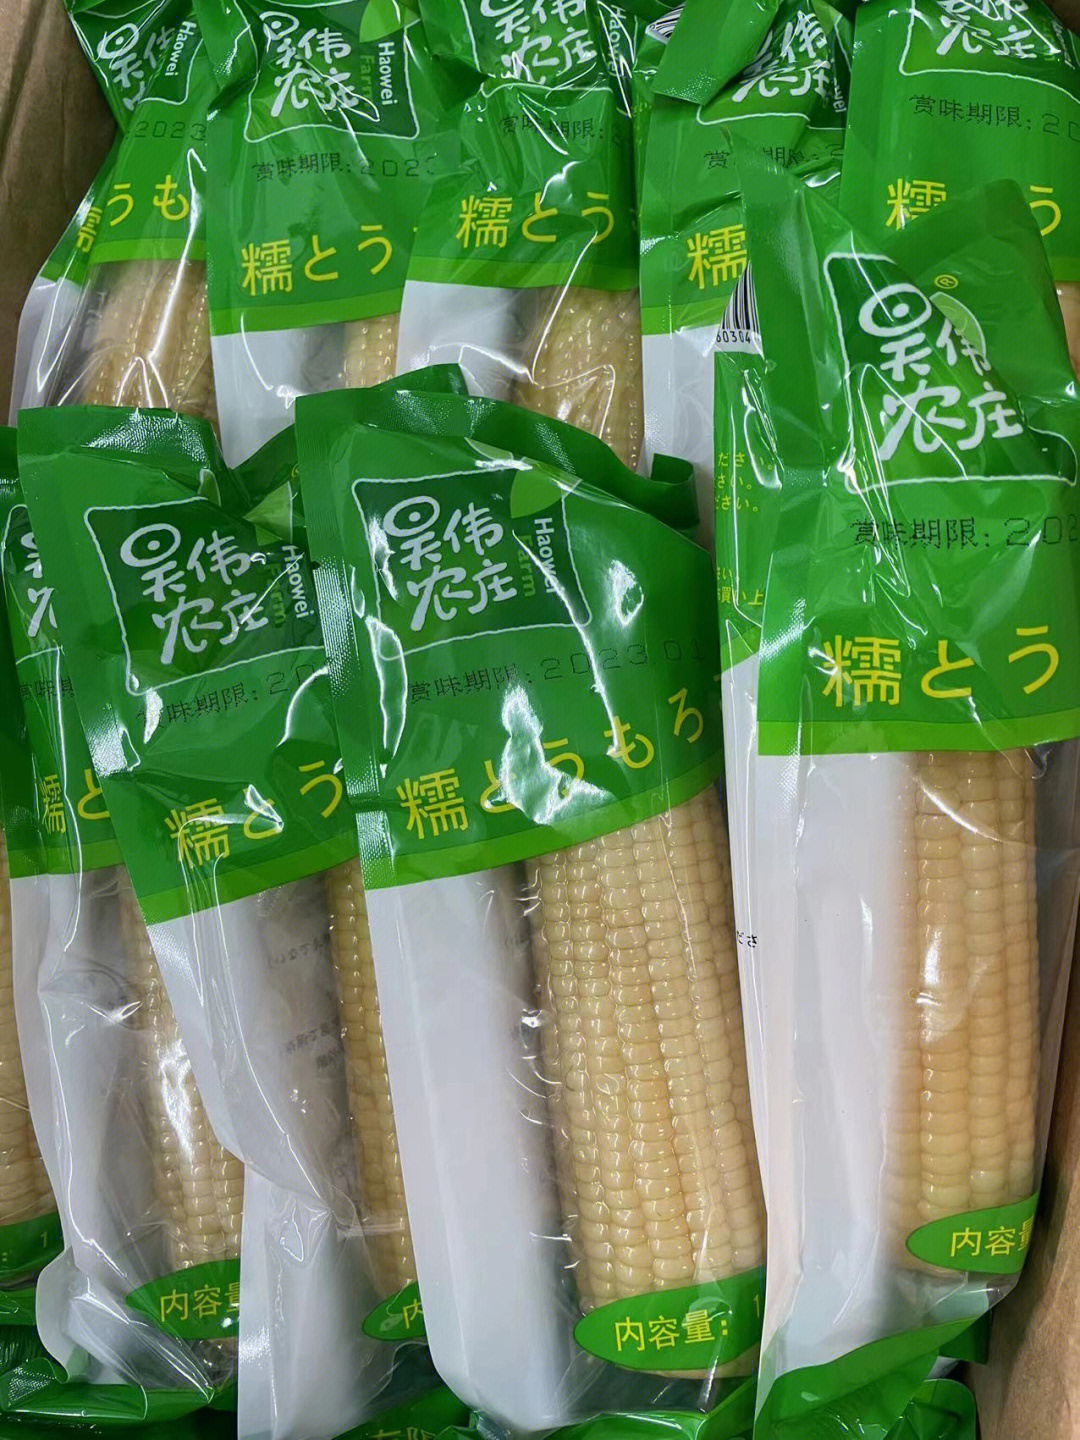 大禹901玉米品种包装图片